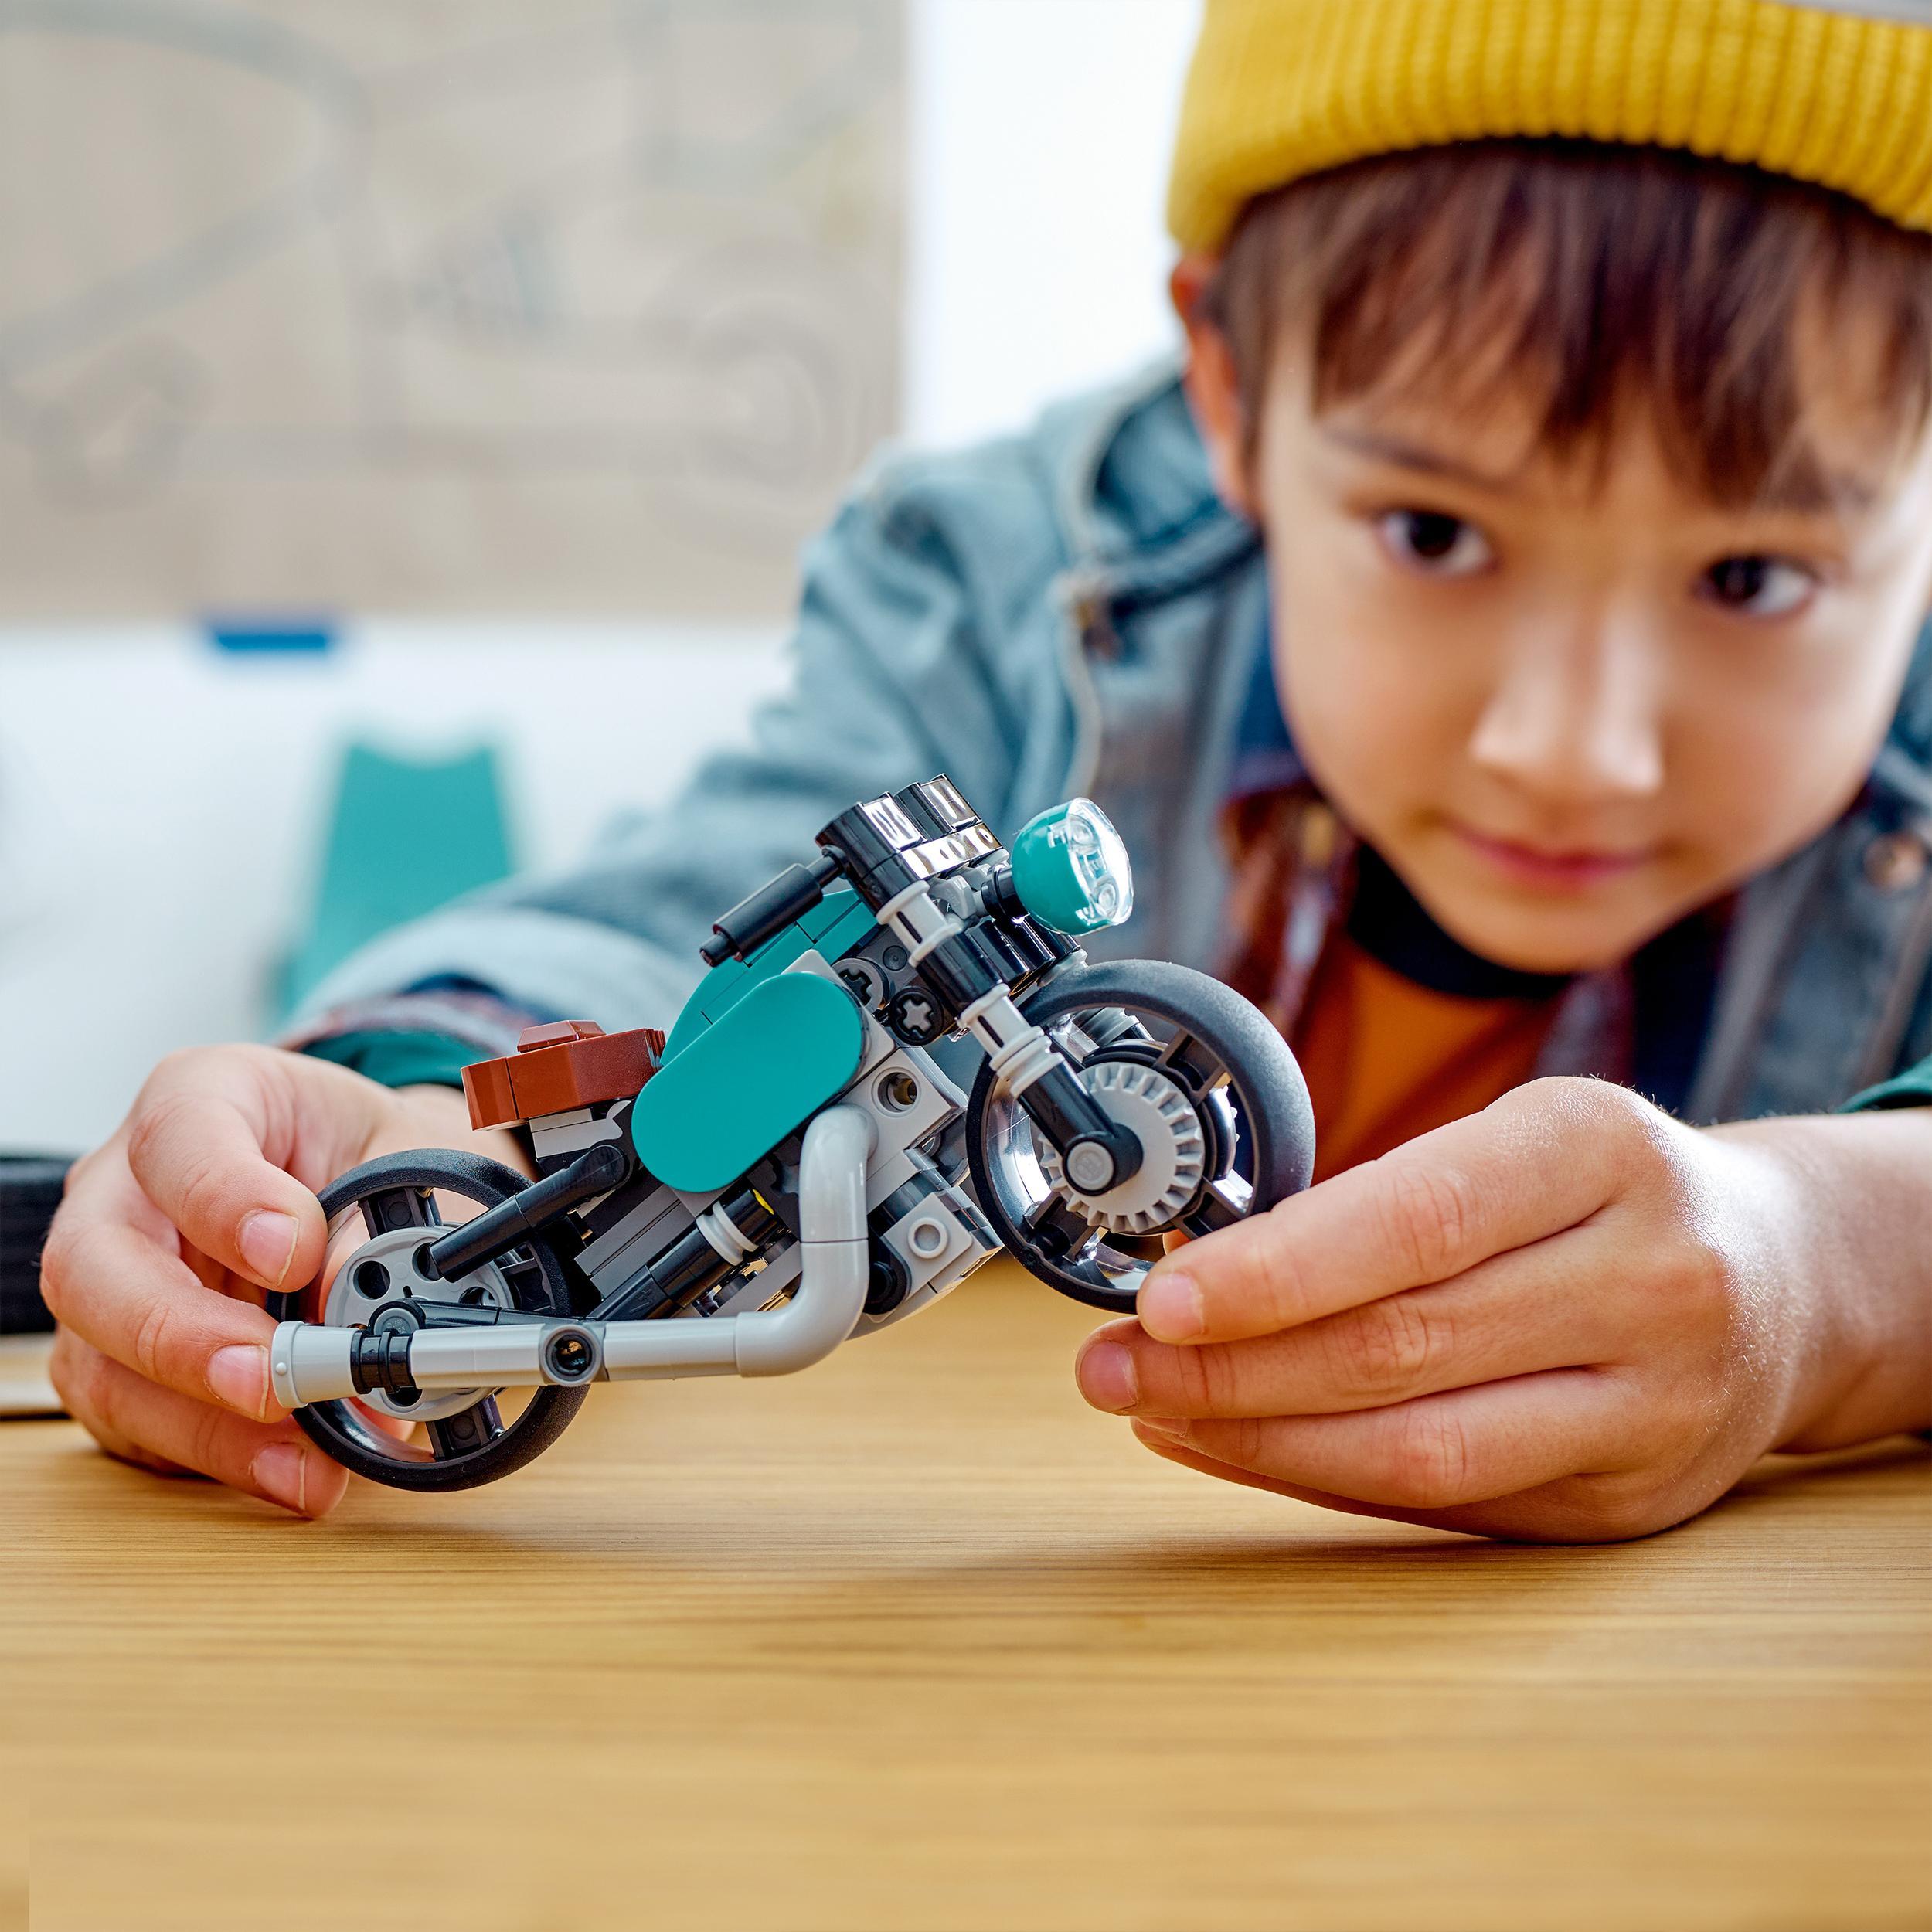 Lego creator 31135 motocicletta vintage, set 3 in 1 con moto giocattolo, road bike e dragster, giochi creativi per bambini - LEGO CREATOR